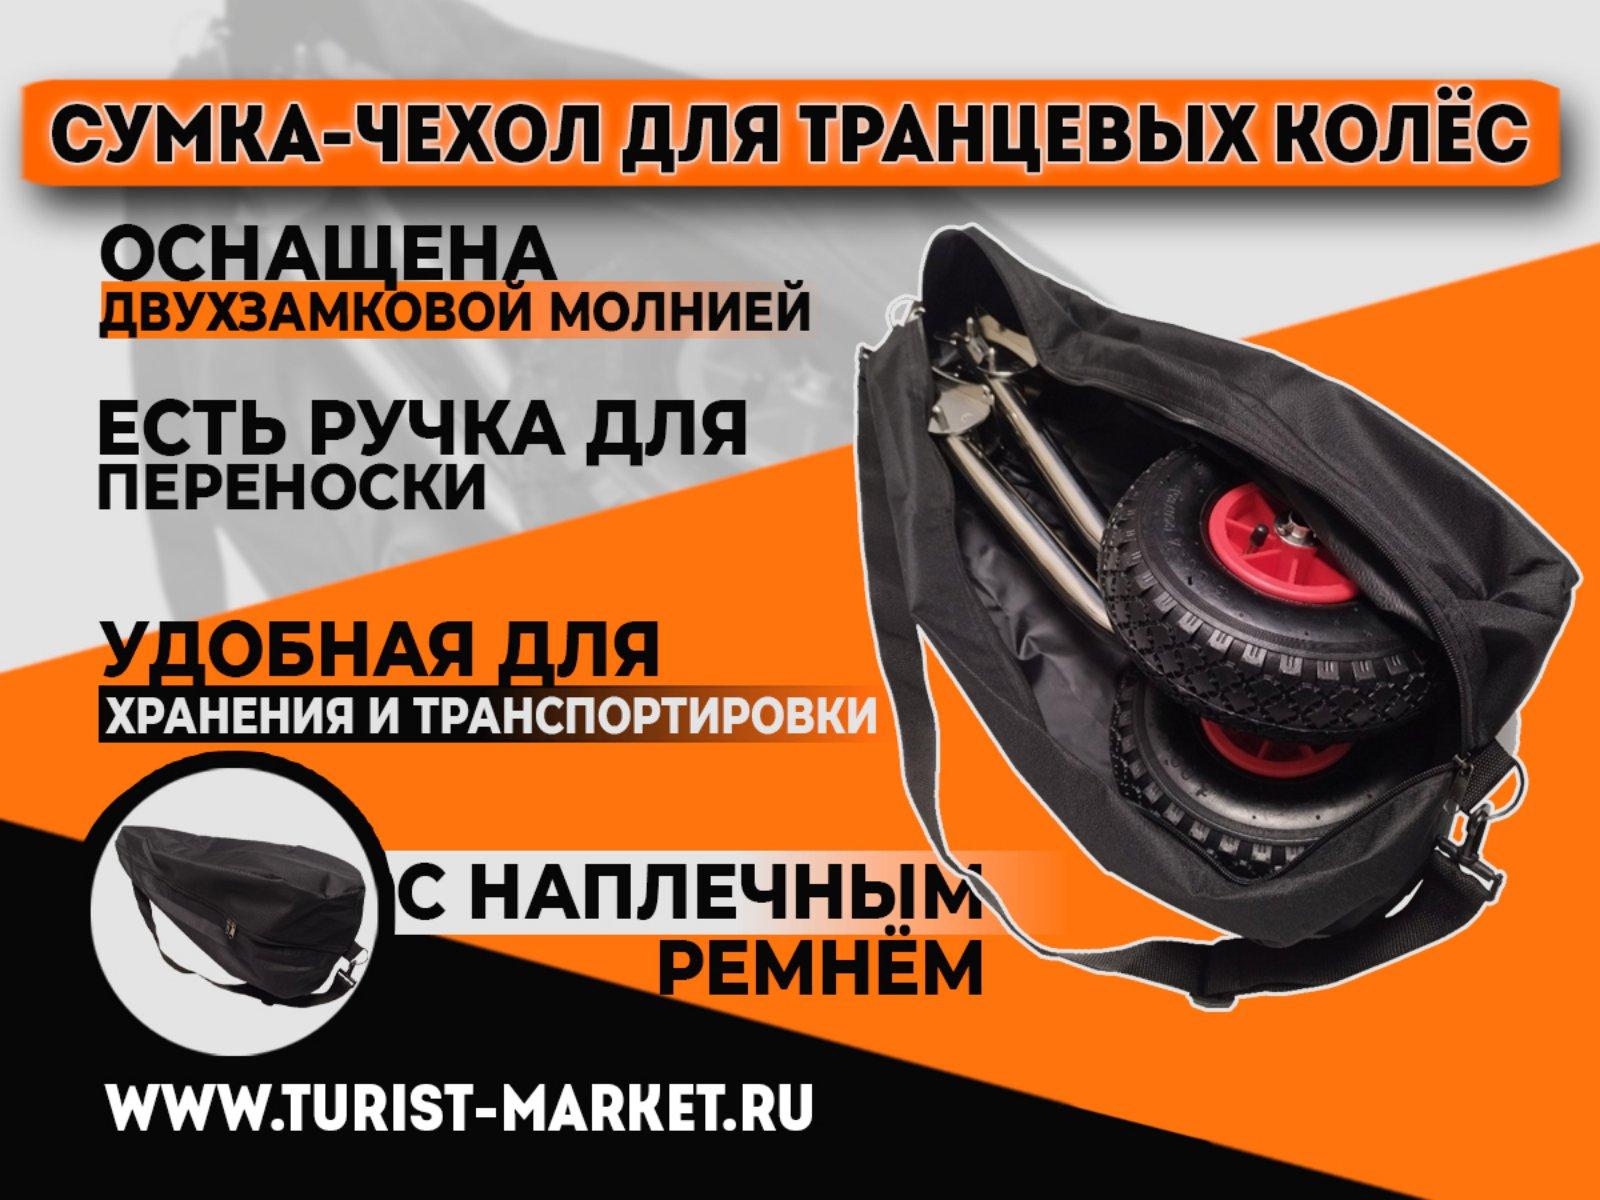 Купить сумку-чехол для транцевых колёс в Интернет магазине «Турист-Маркет»